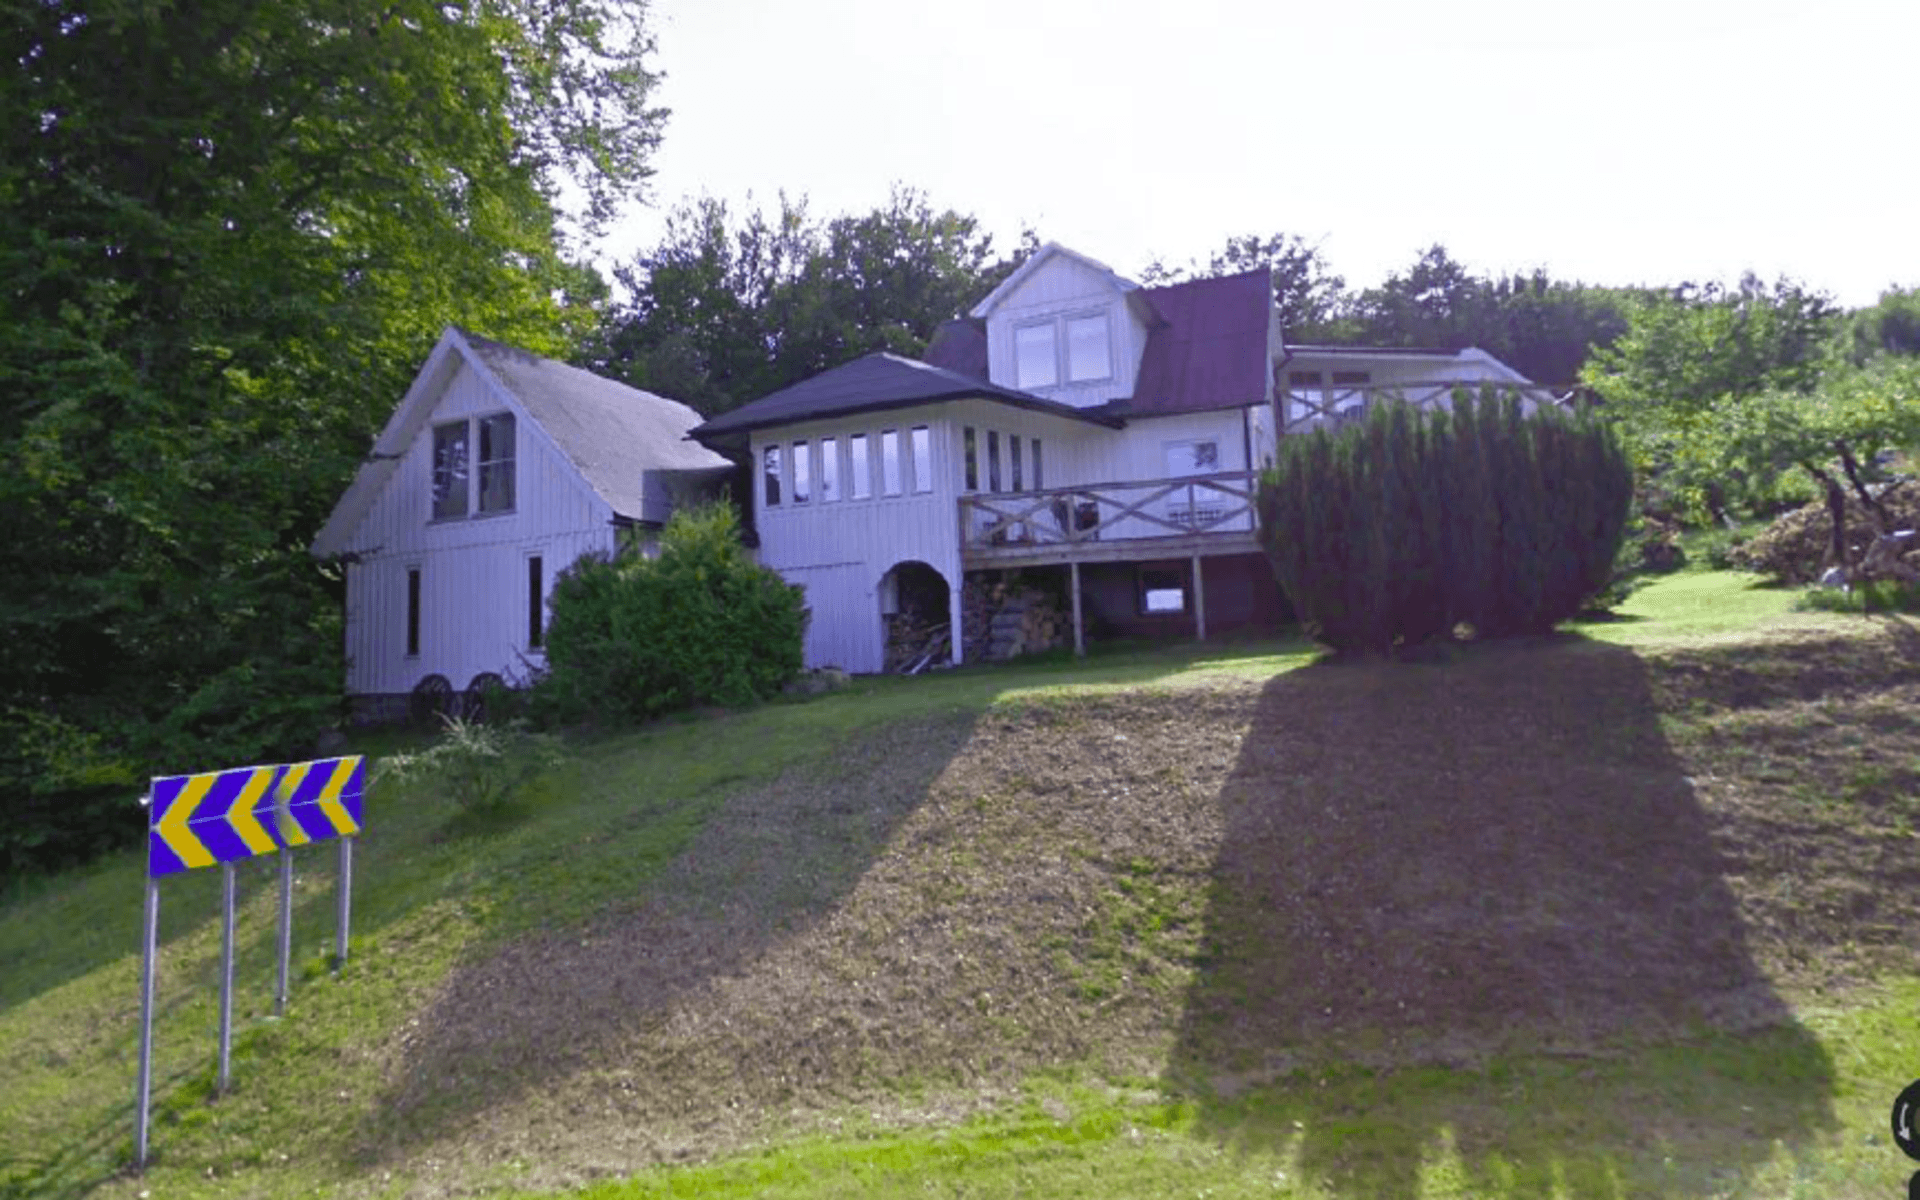 Miljö- och byggnadsnämnden använder material från karttjänsten Google Street View som bevis för att huset har byggts till igen. Den här bilden togs av Googlebilen i maj 2010. Bild: Laholms kommun/Google